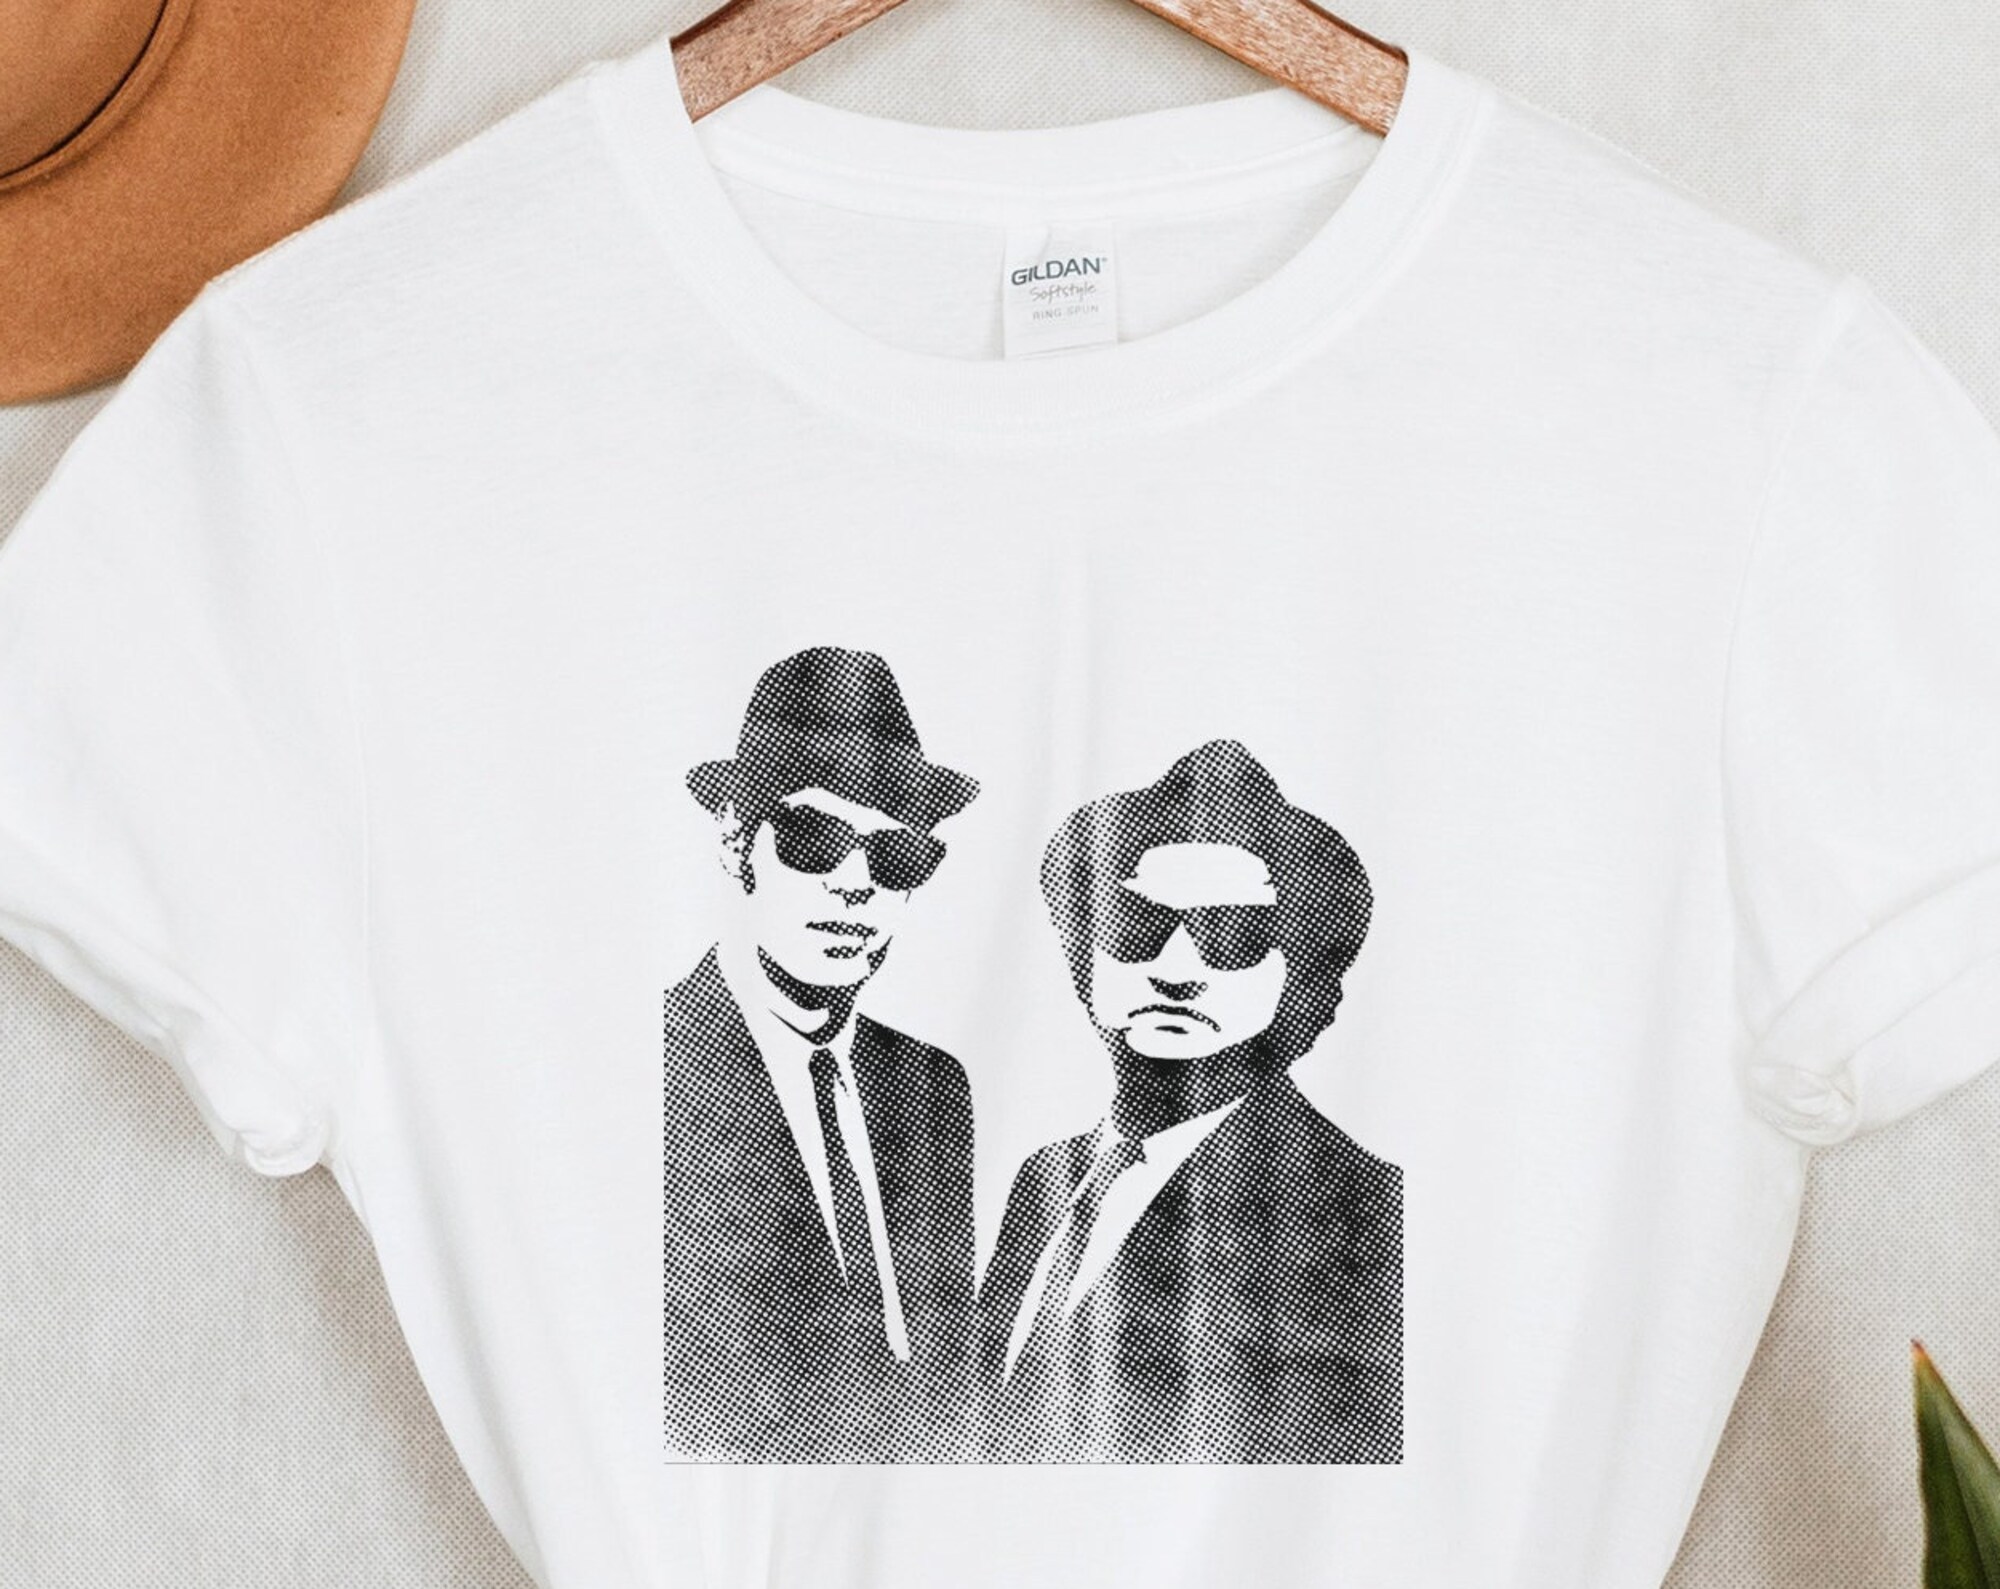 Discover Maglietta T-Shirt The Blues Brothers Uomo Donna Bambini - Film Di Culto Retro Degli Anni '80